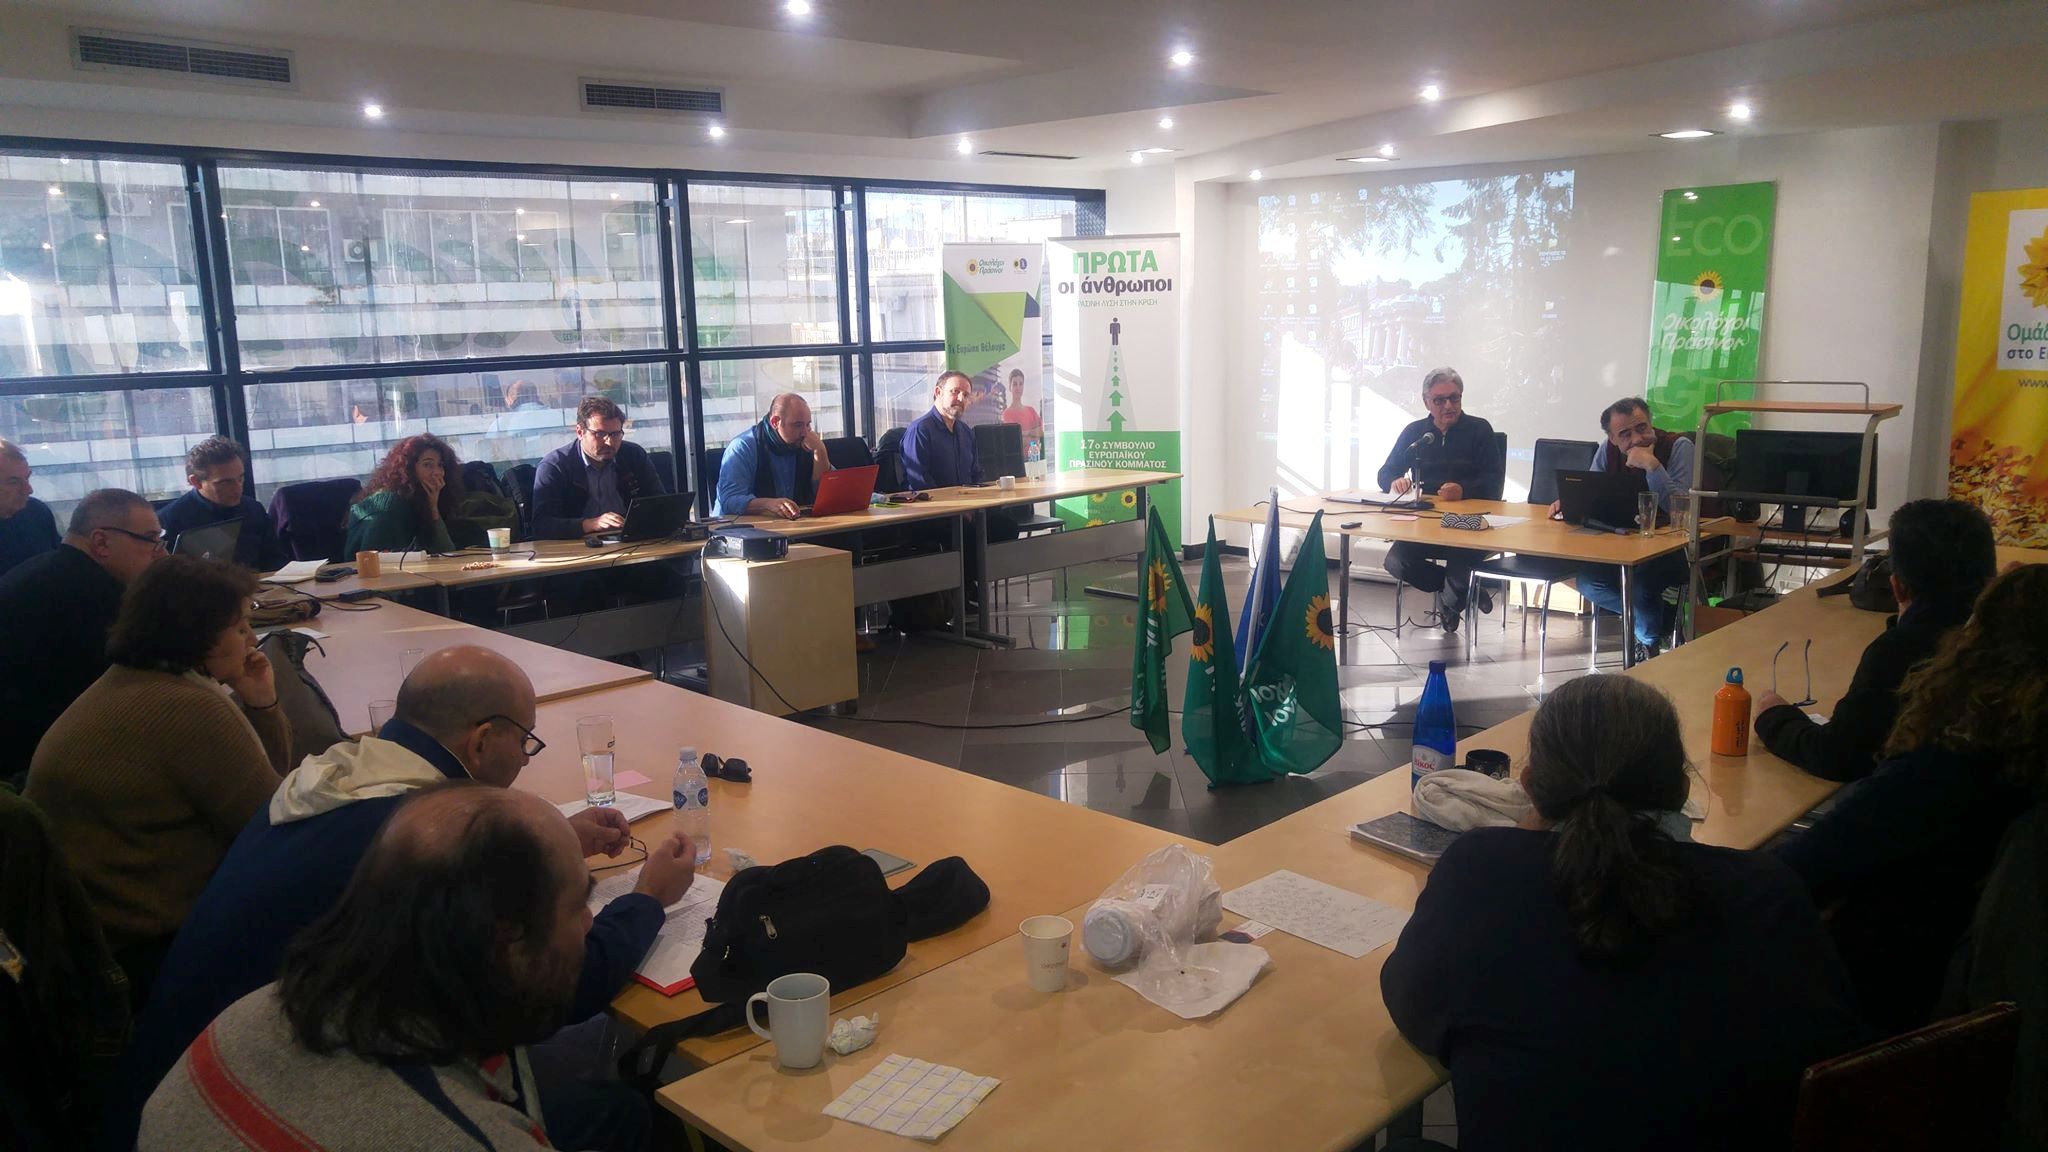 Πραγματοποιήθηκε το Σάββατο και την Κυριακή 15 & 16 Δεκεμβρίου η τακτική συνεδρίαση του Πανελλαδικού Συμβουλίου των Οικολόγων Πράσινων, στην αίθουσα εκδηλώσεων στα γραφεία του κόμματος στην Αθήνα. Ανάμεσα στα […]